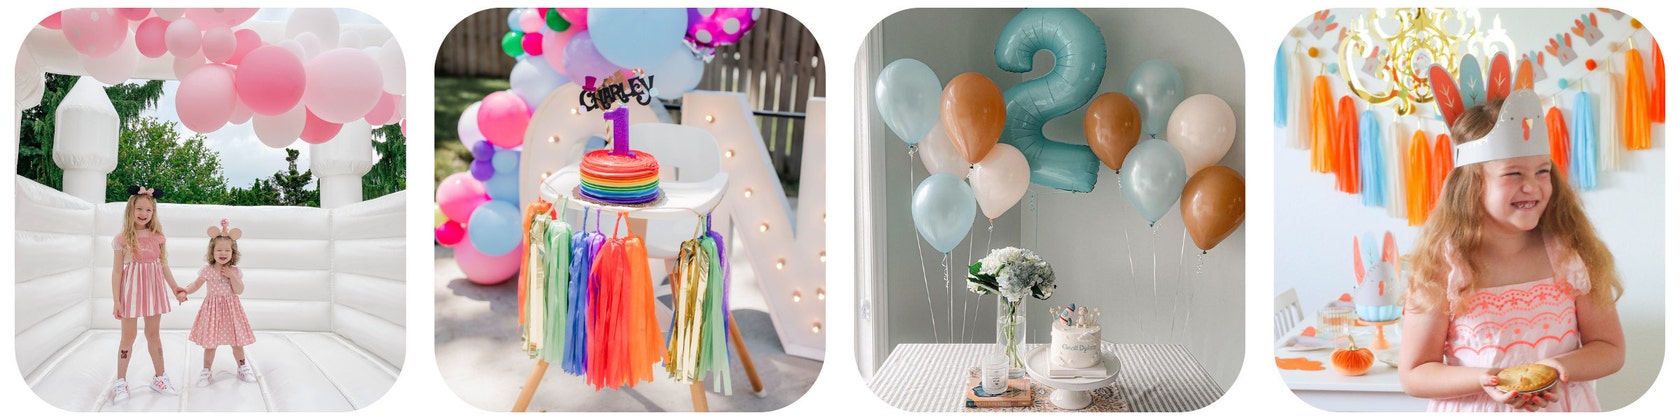  Decoraciones de unicornio para fiesta de segundo cumpleaños  para niñas, kit de suministros de fiesta de segundo cumpleaños de Hombae  con guirnalda de globos de globos de cumpleaños de arcoíris, globo